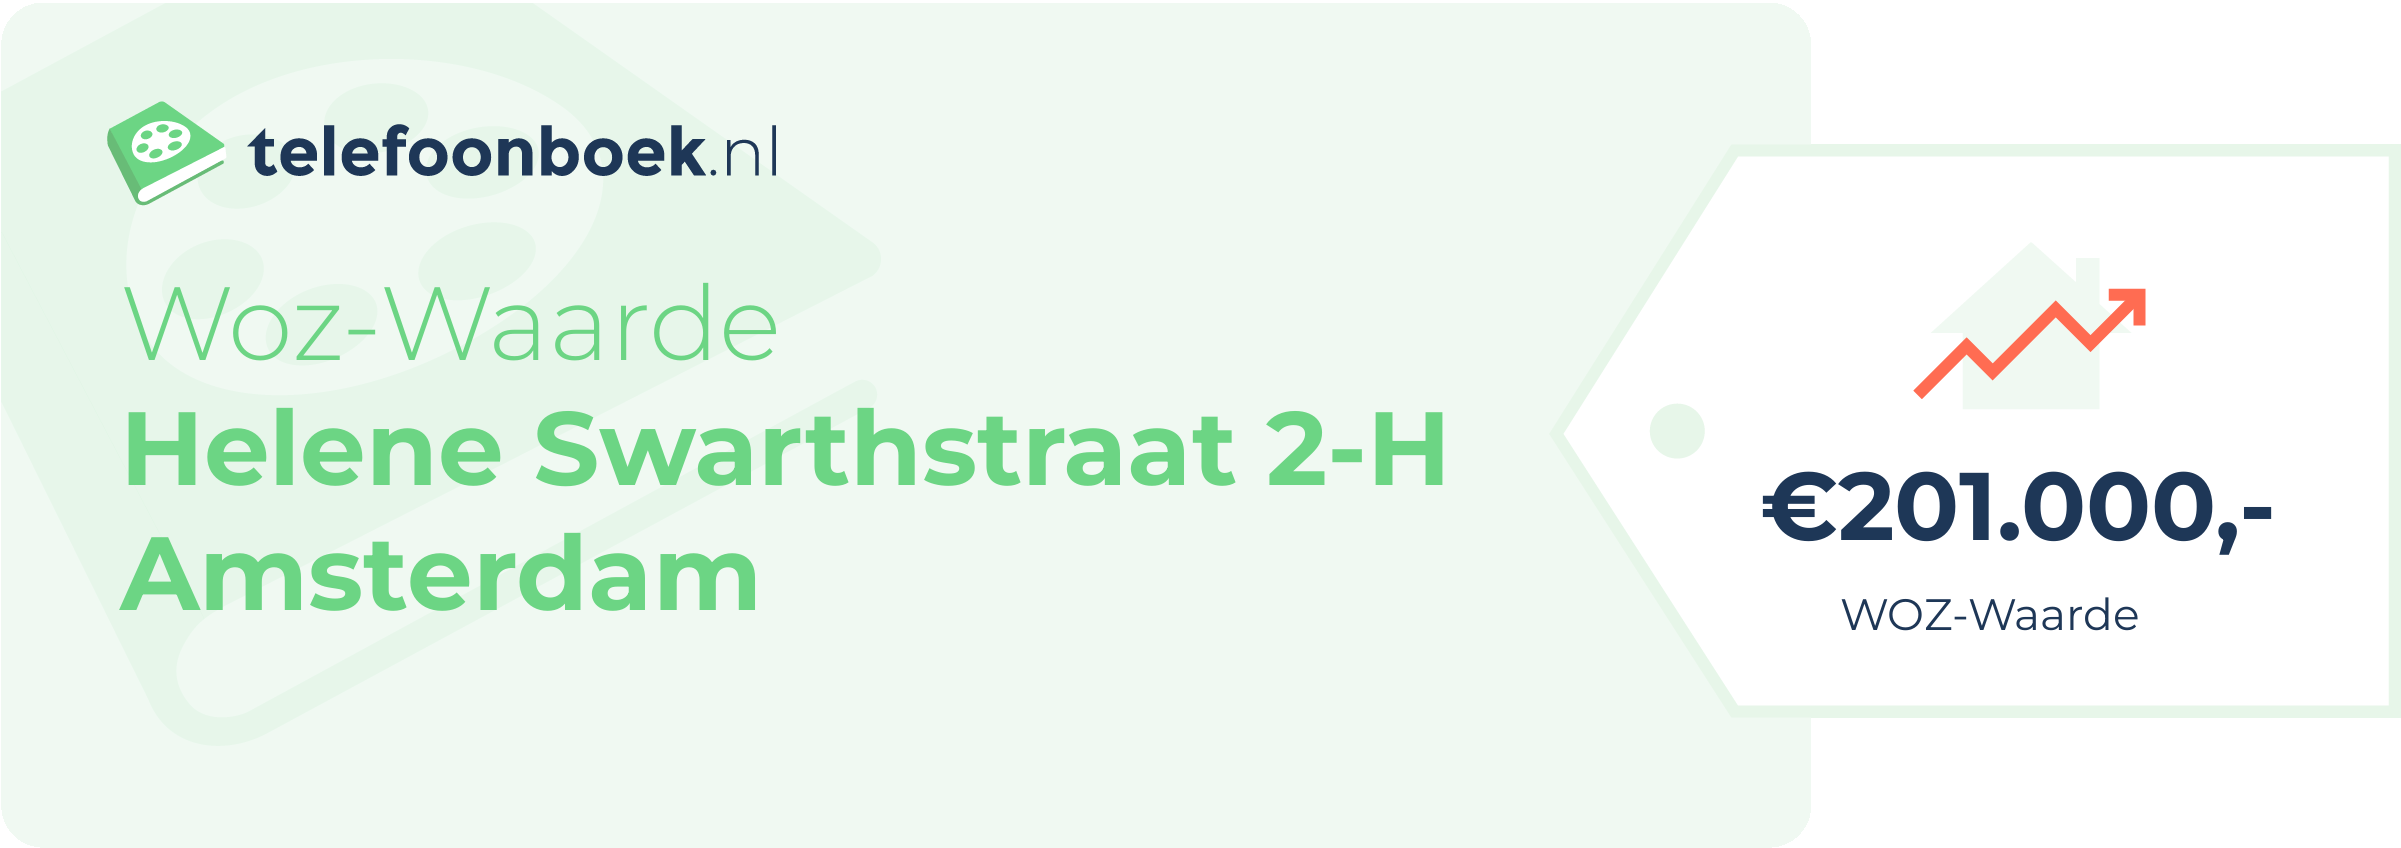 WOZ-waarde Helene Swarthstraat 2-H Amsterdam